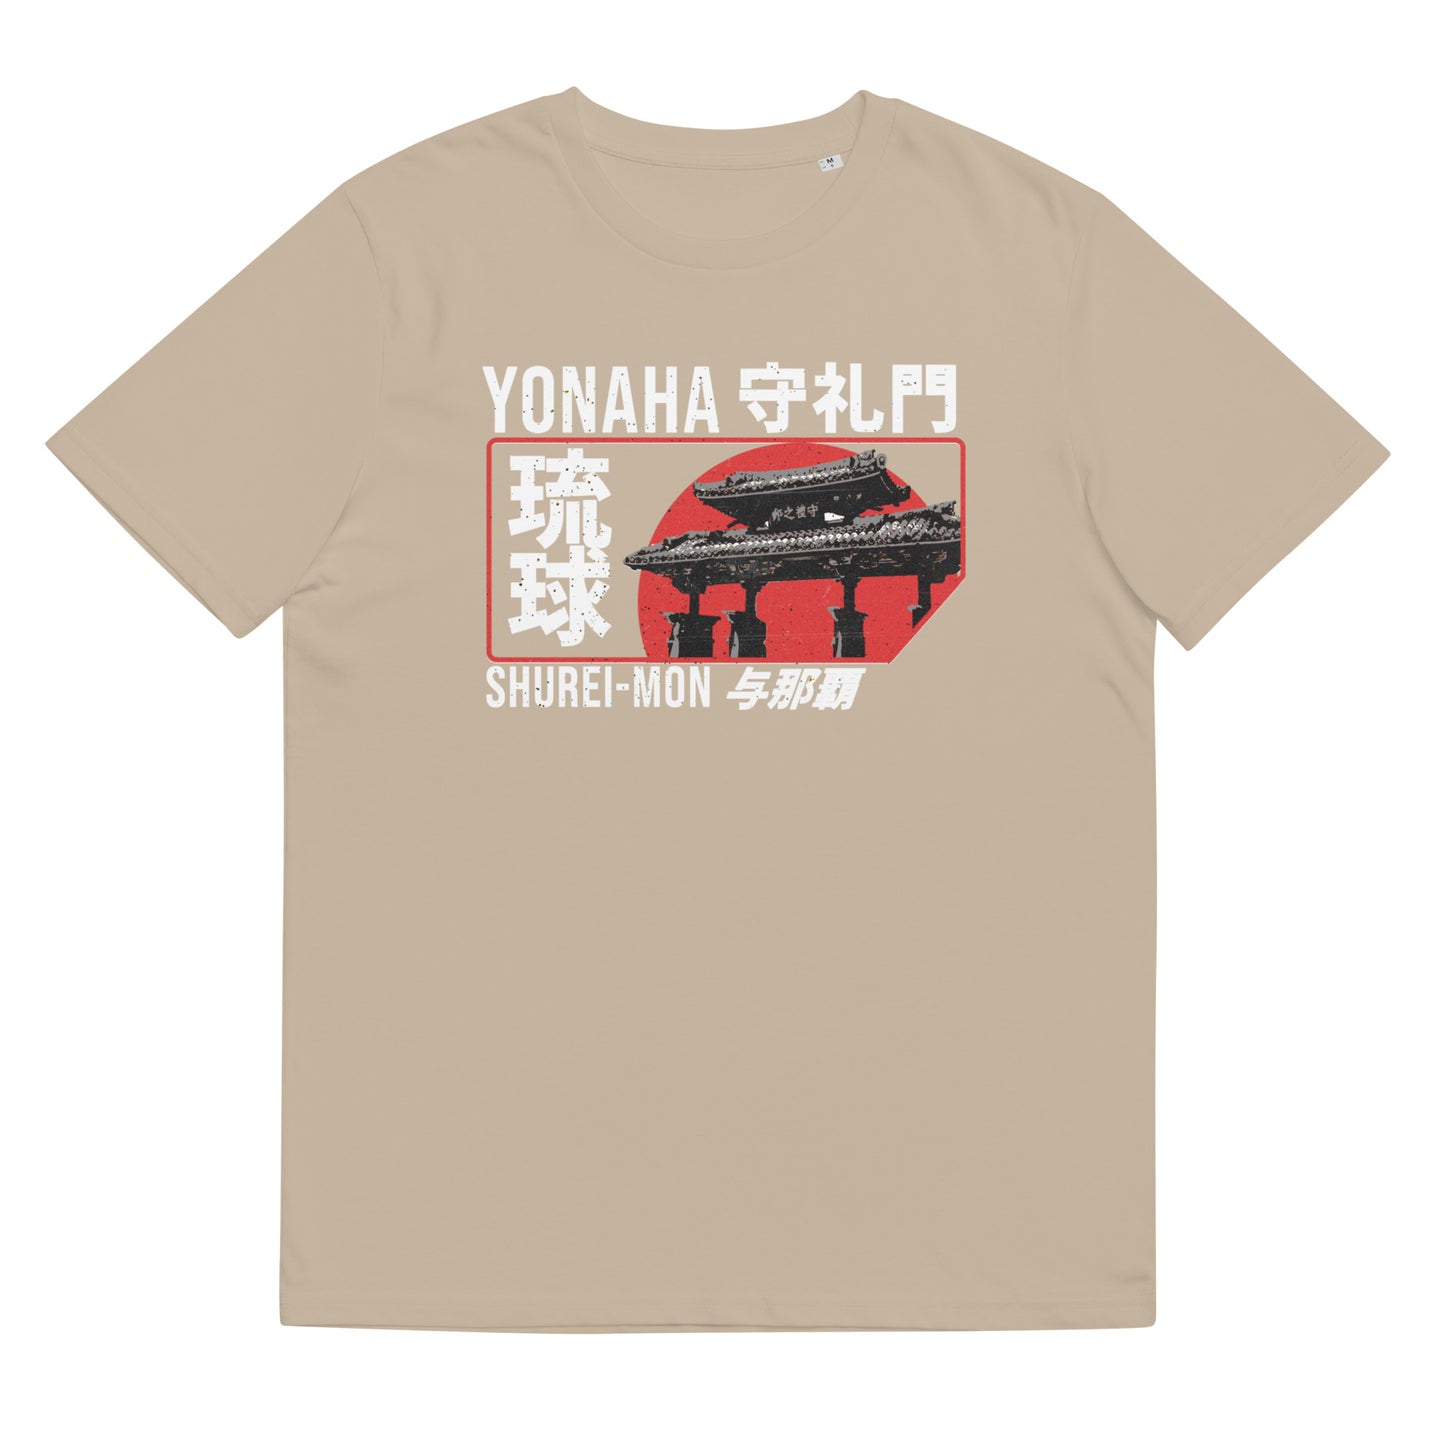 Torii Shureimon T-Shirt